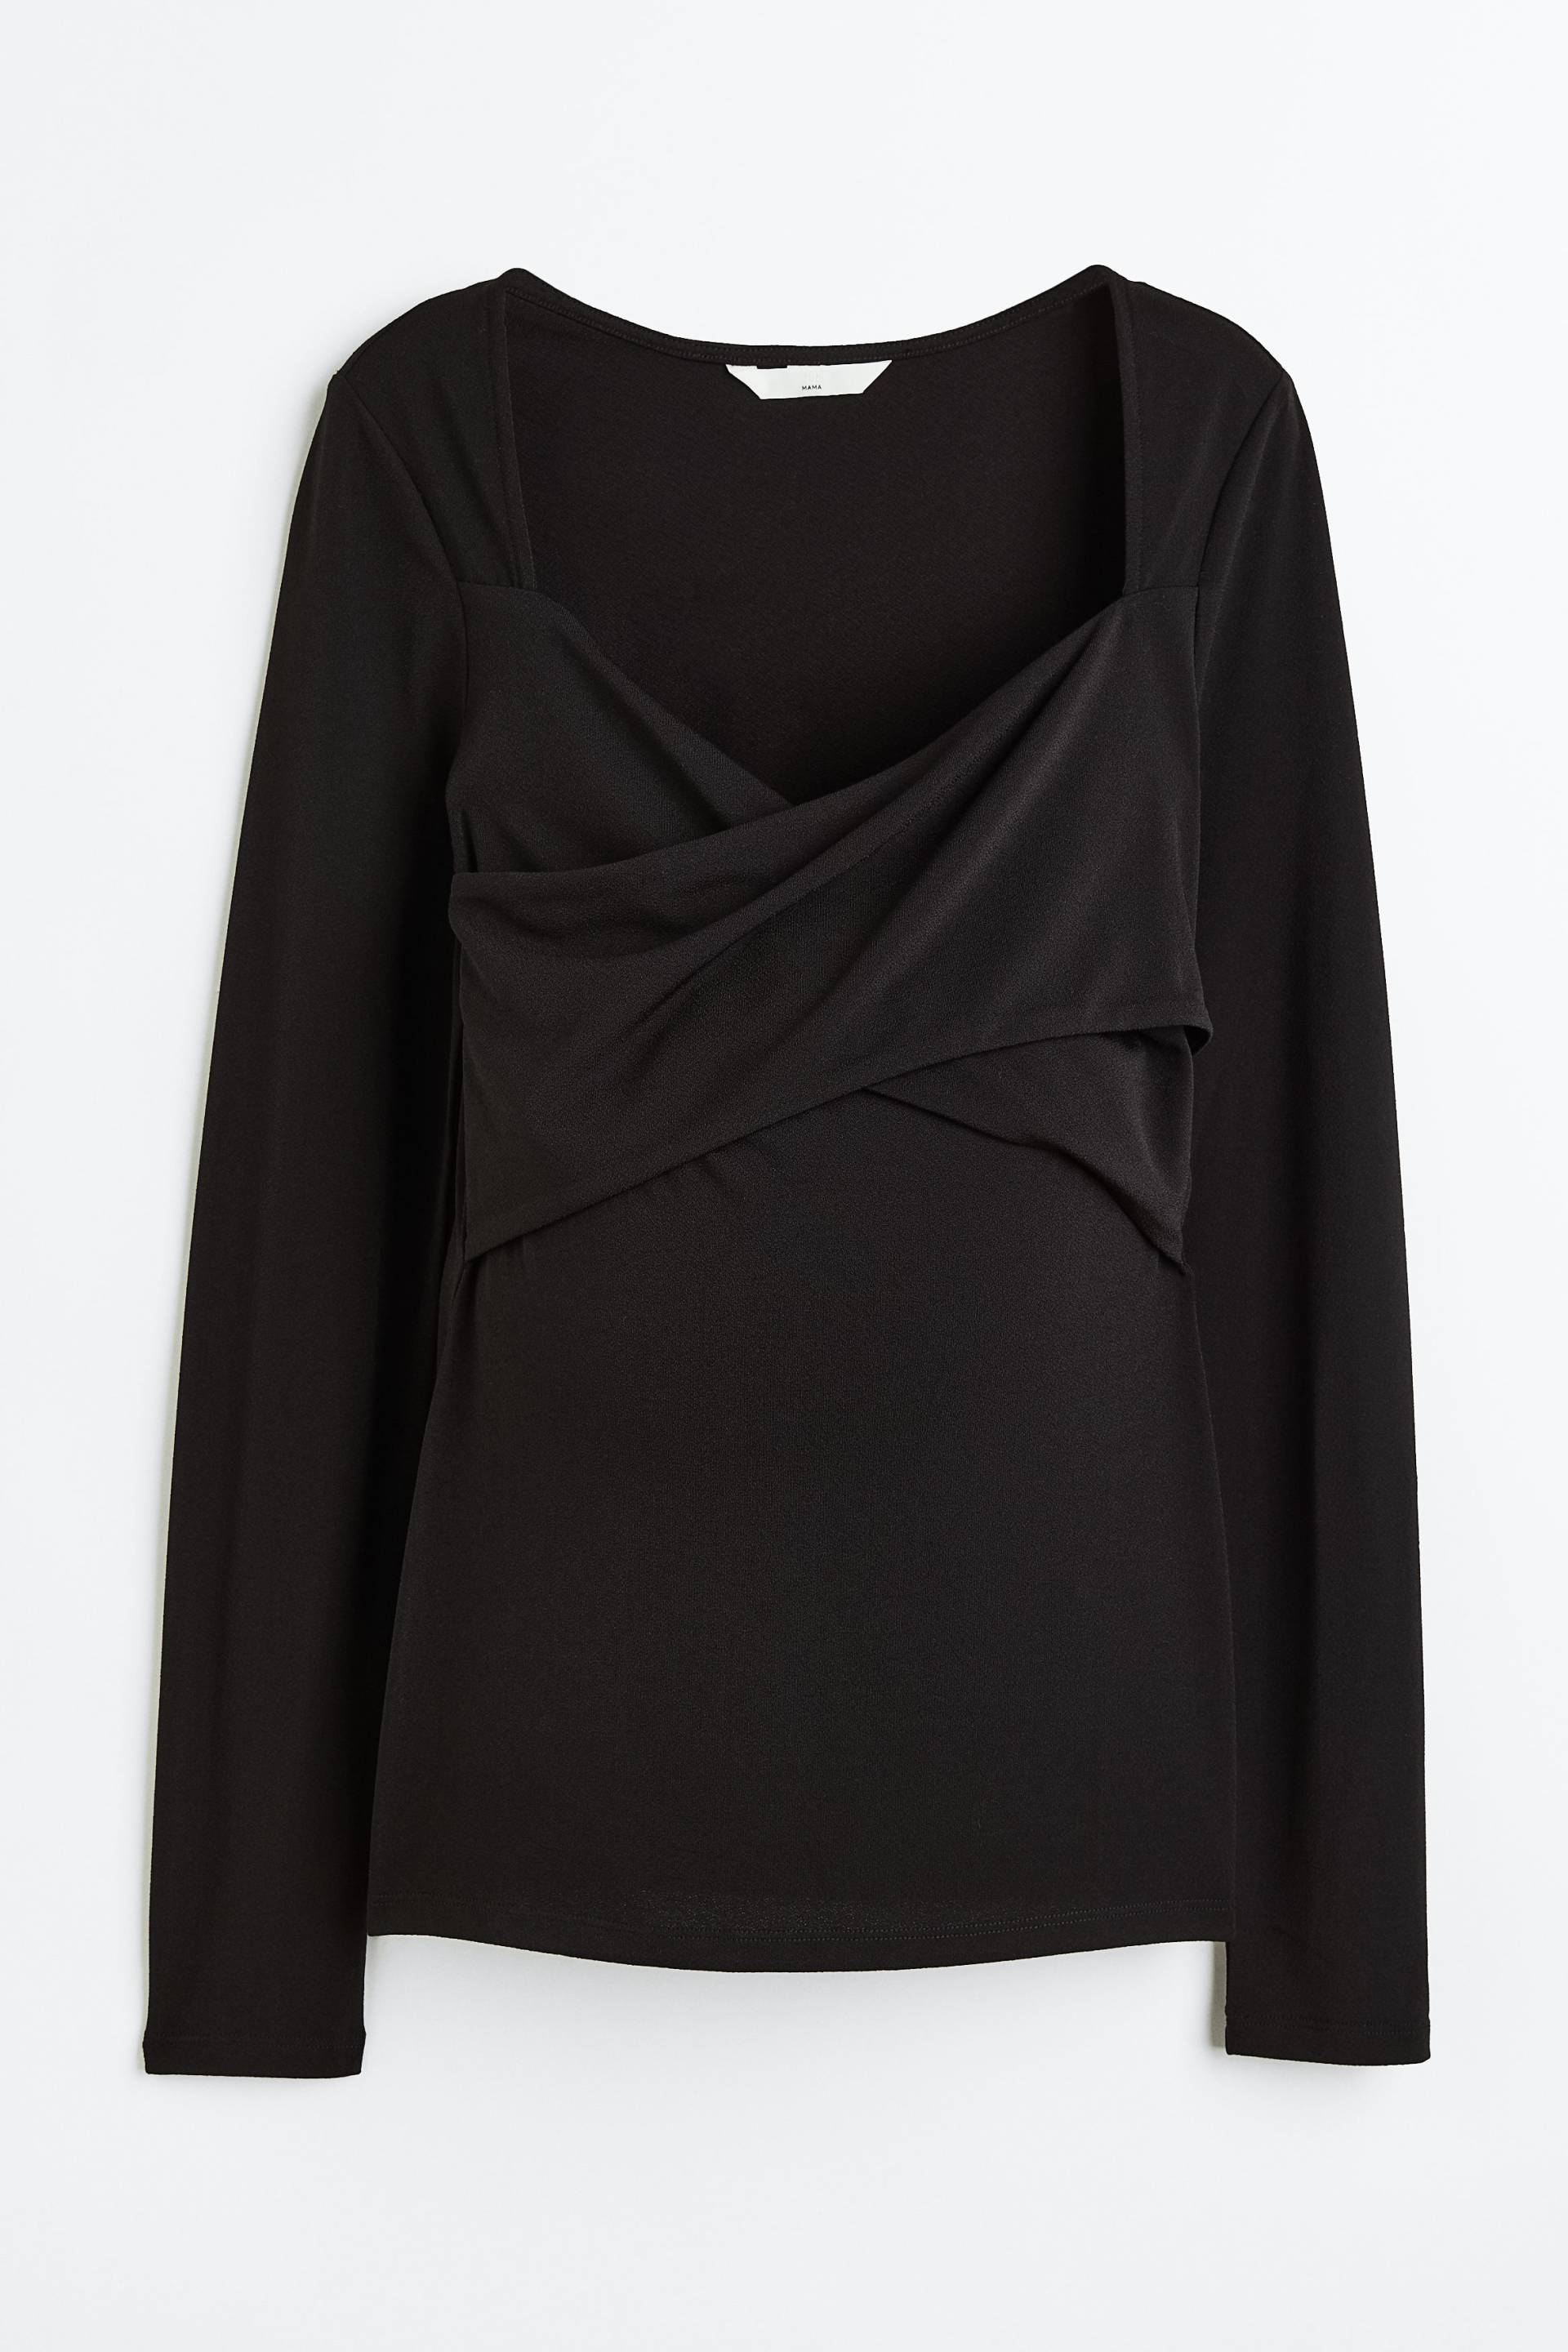 H&M MAMA Stillshirt aus Jersey Schwarz, Tops in Größe M. Farbe: Black von H&M